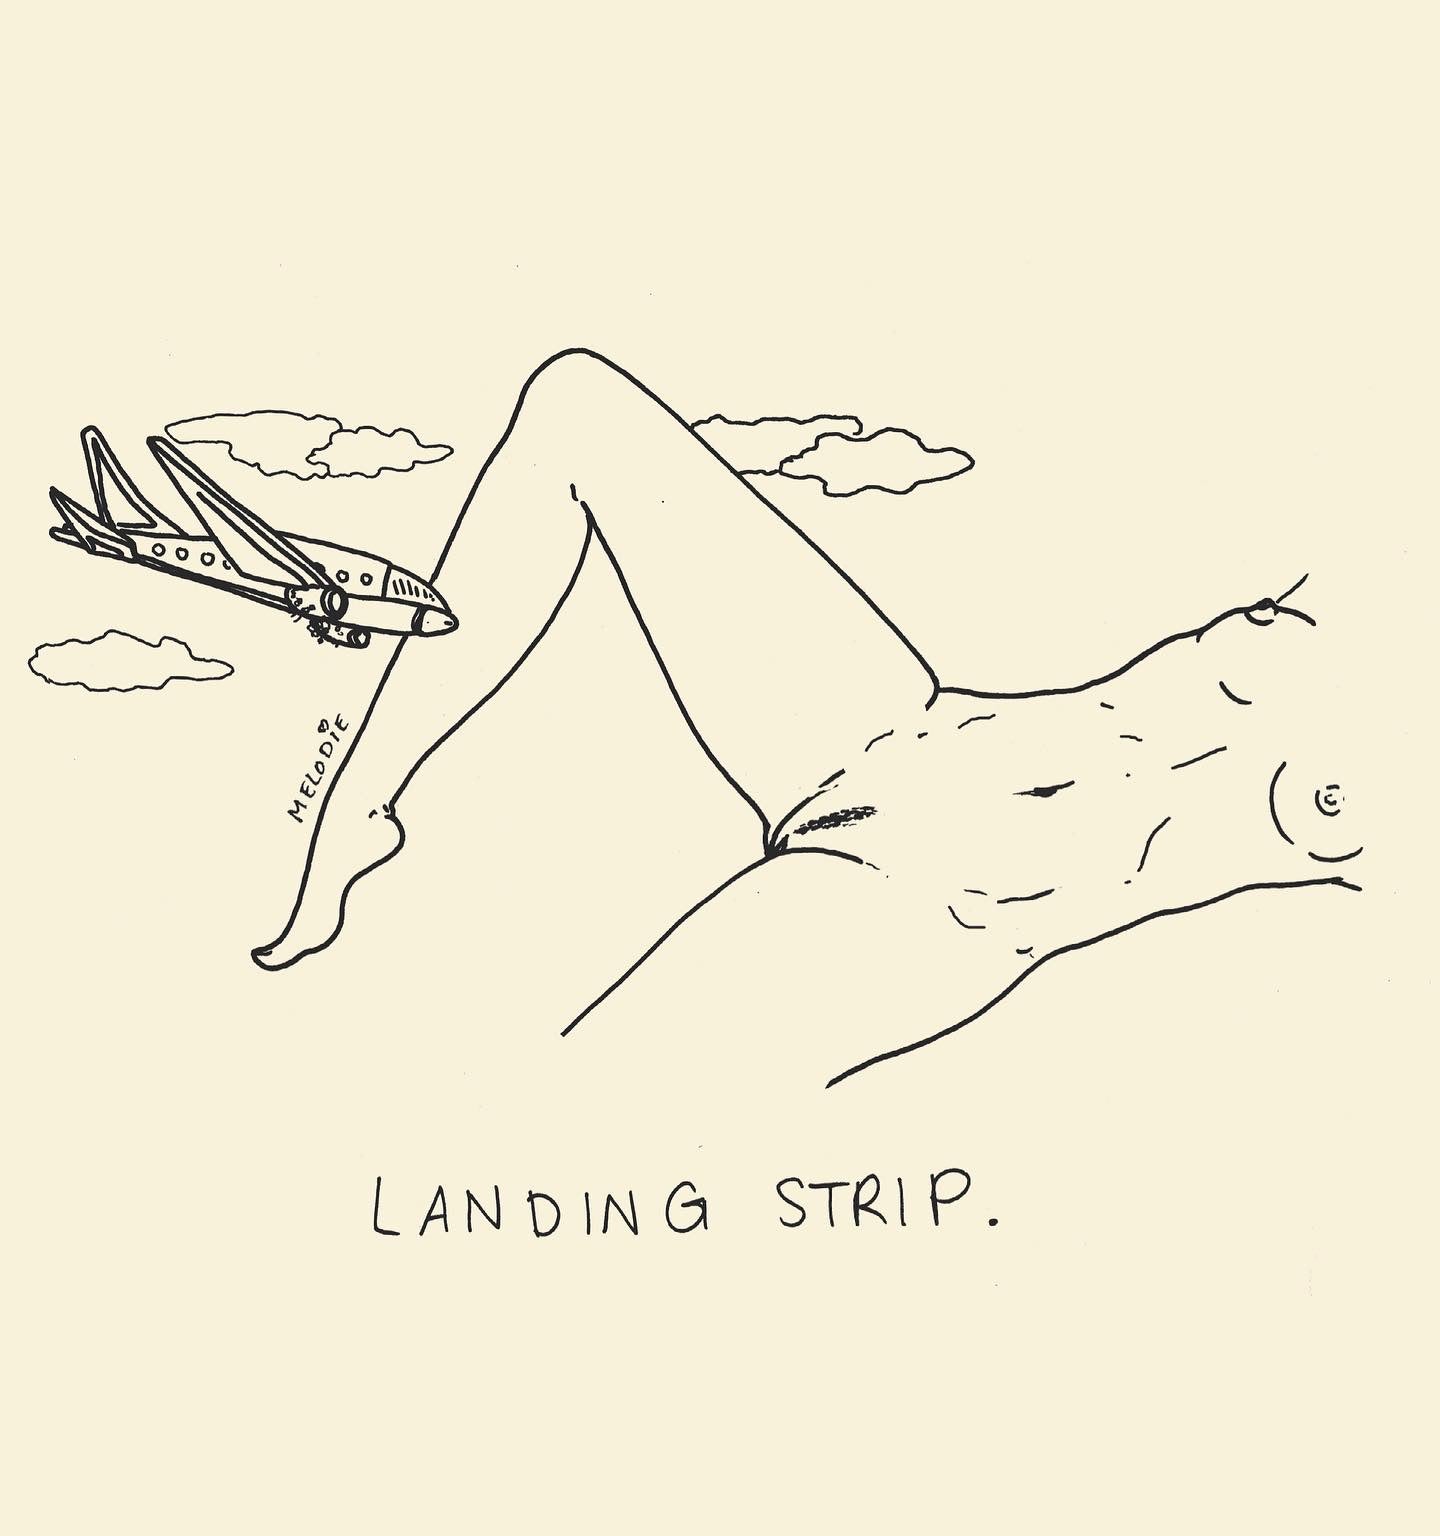 " Landing Strip "